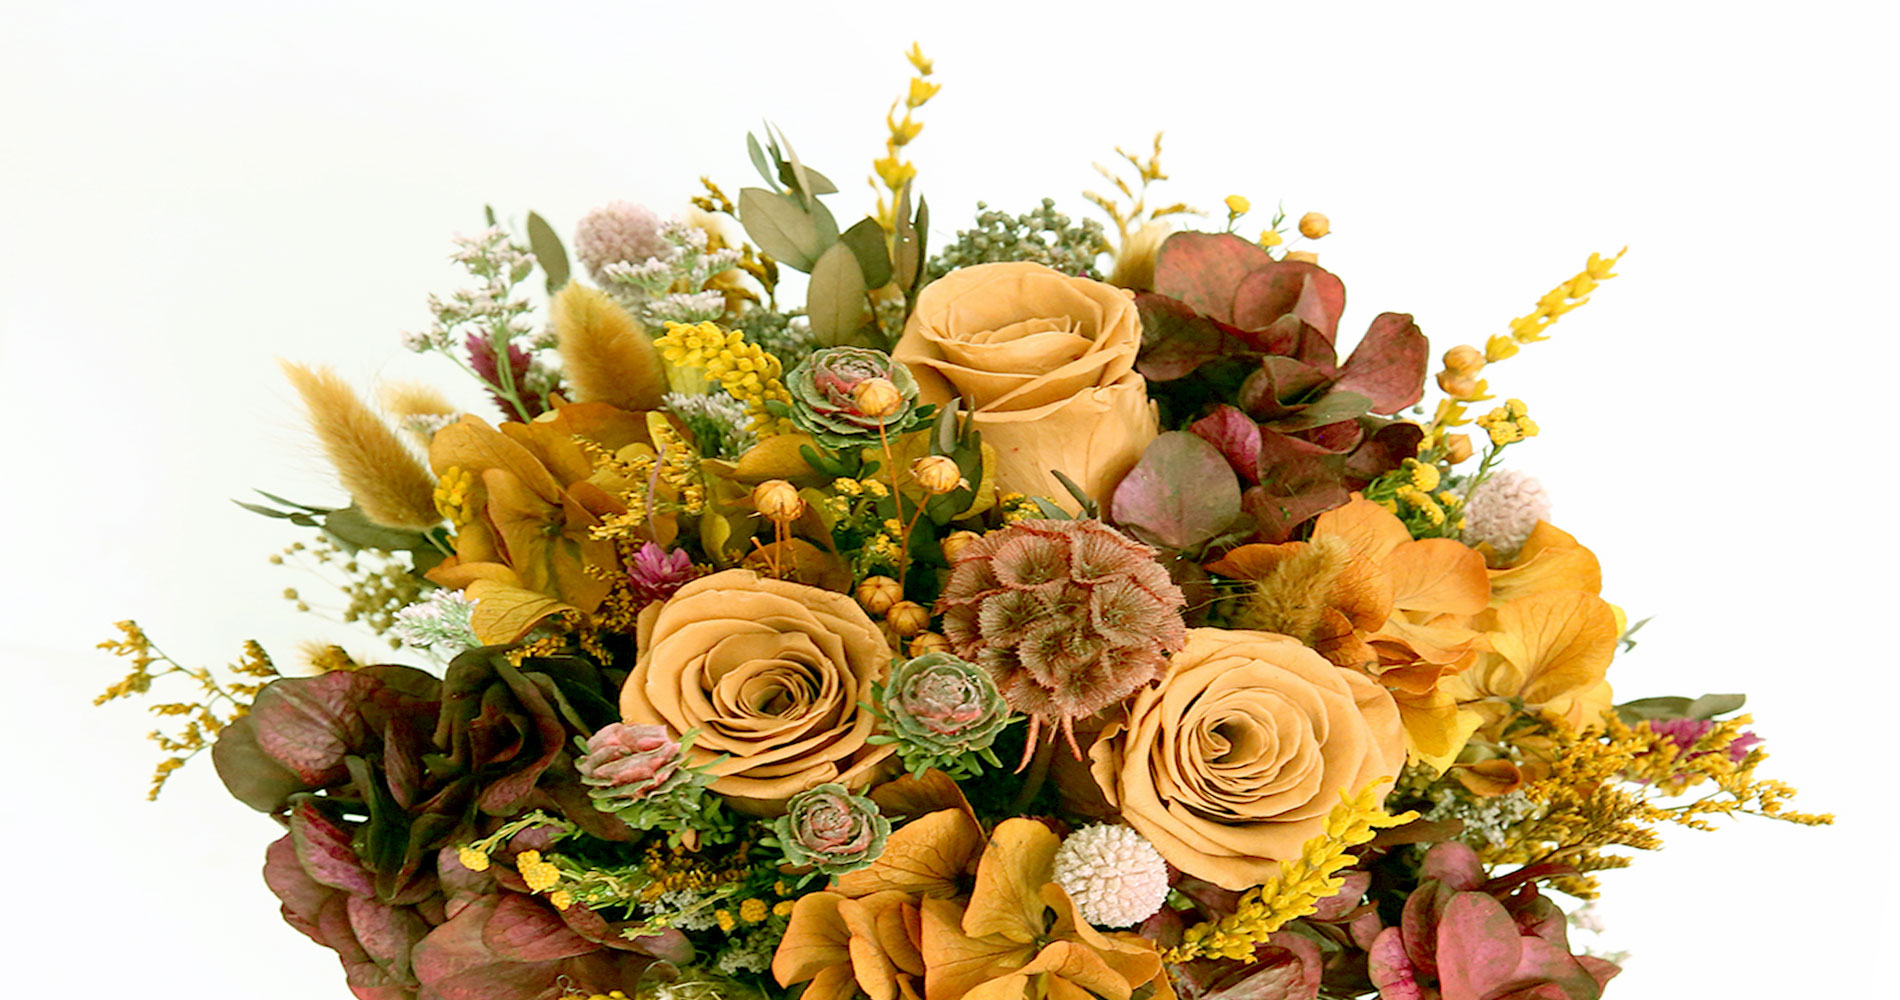 Les fleurs en bouquets et plantes d'intérieur